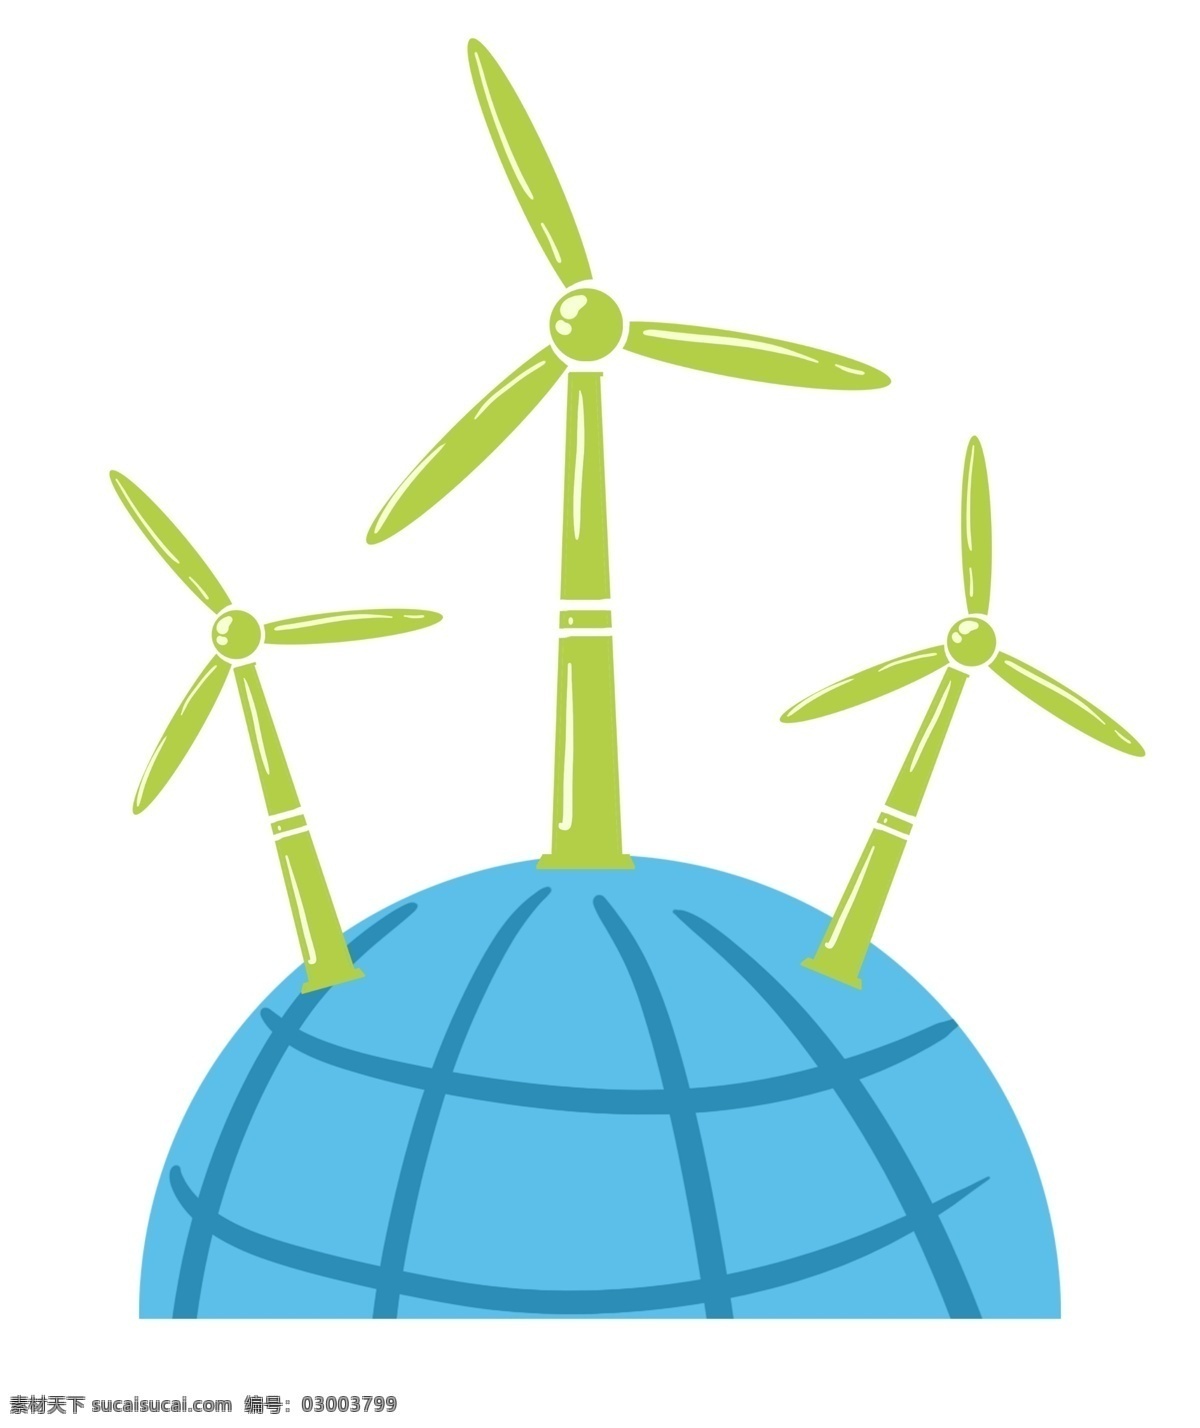 地球 上 风车 插图 立体风车 绿色风车 三个风车 蓝色地球 卡通地球 装饰地球 环保地球 保护环境